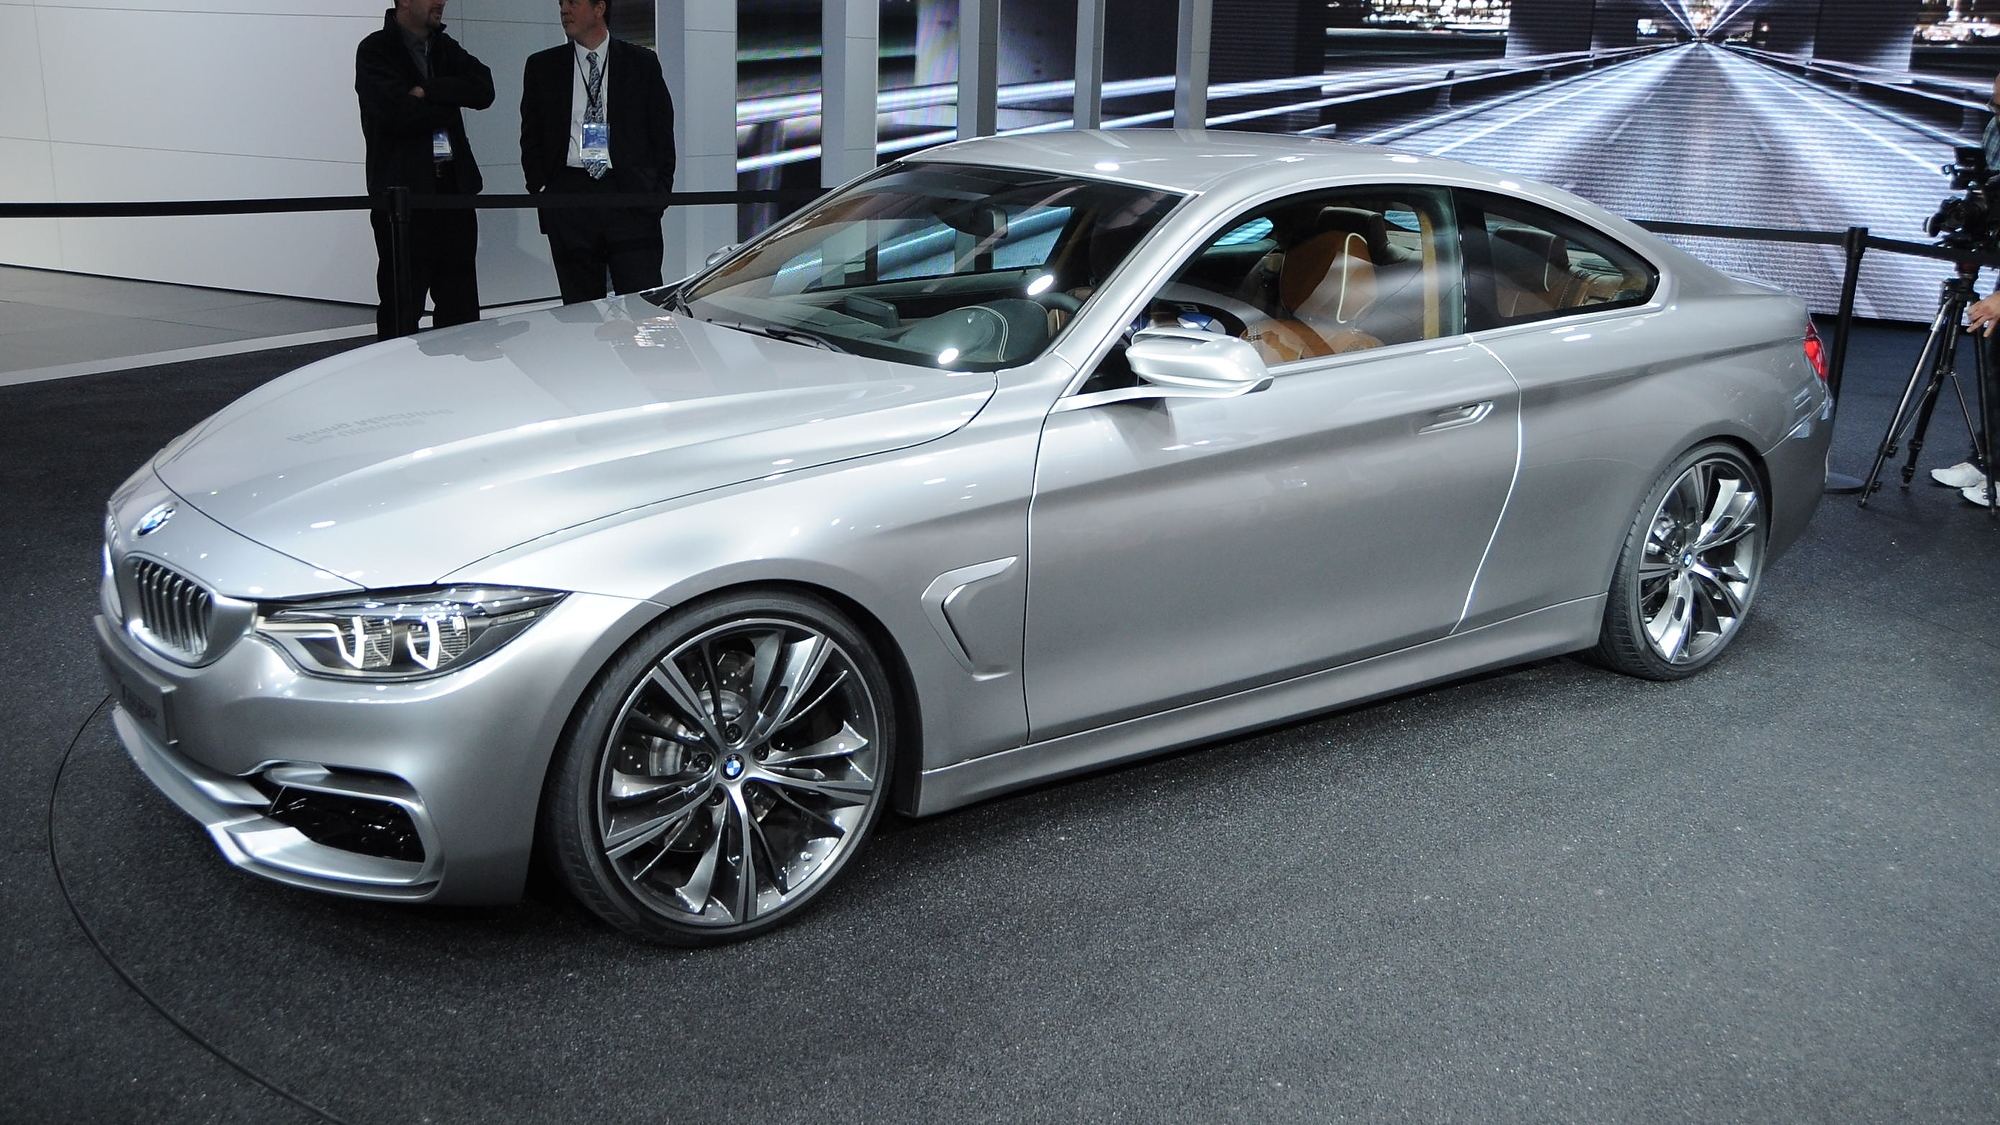 BMW 4-Series Coupe Concept at 2013 Detroit Auto Show